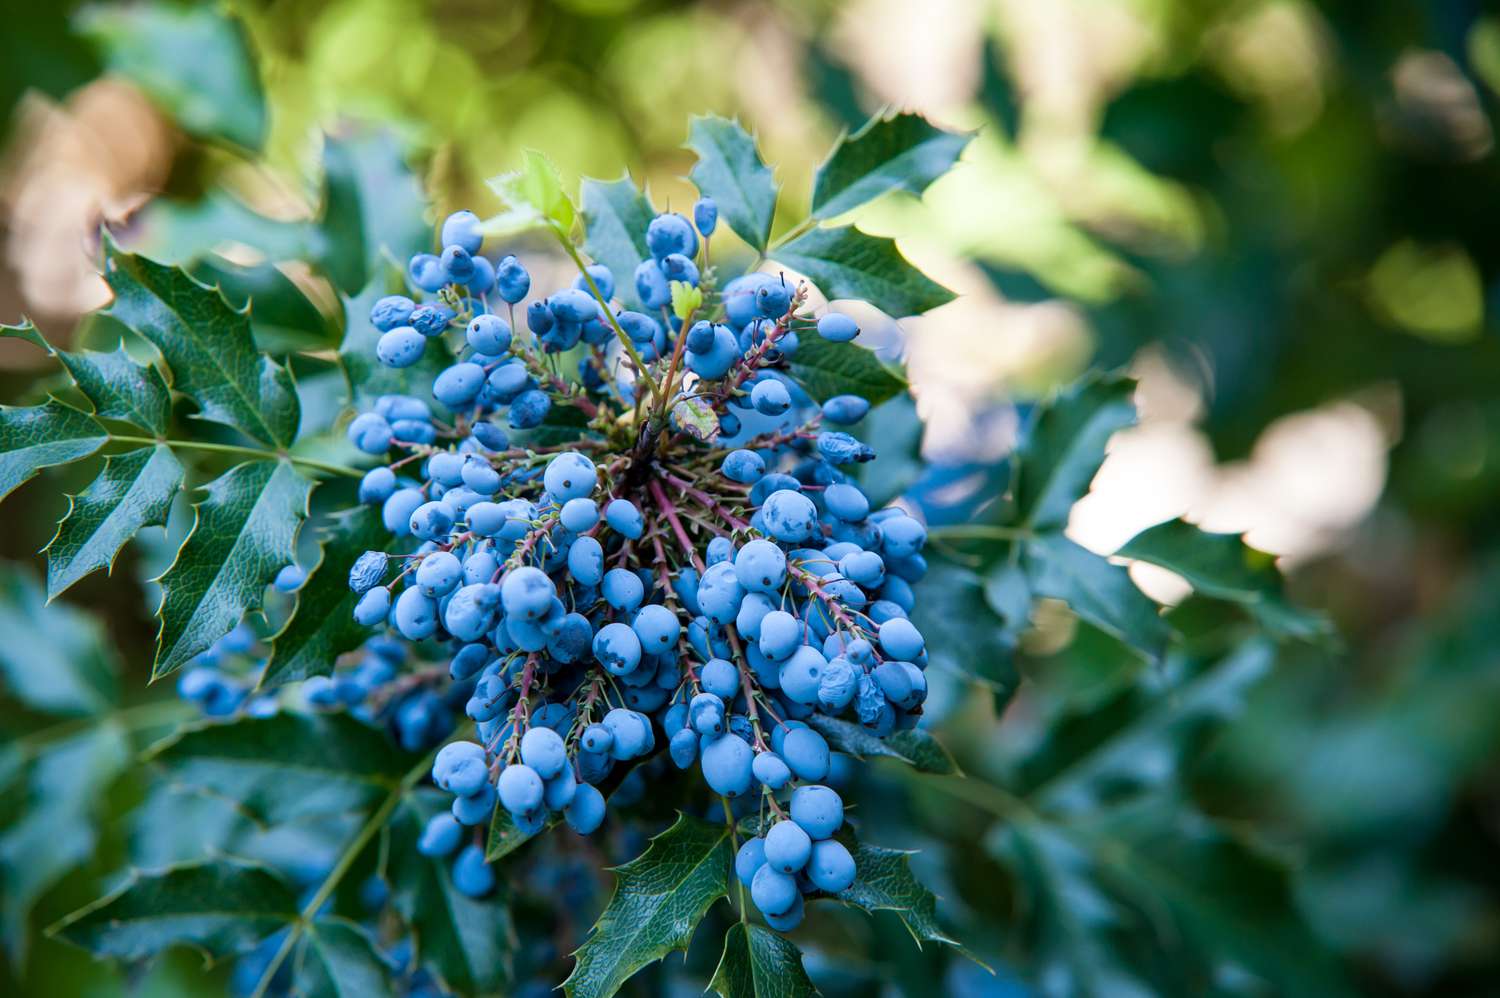 Arbusto de uva de Oregón rama con uvas y hojas azul claro